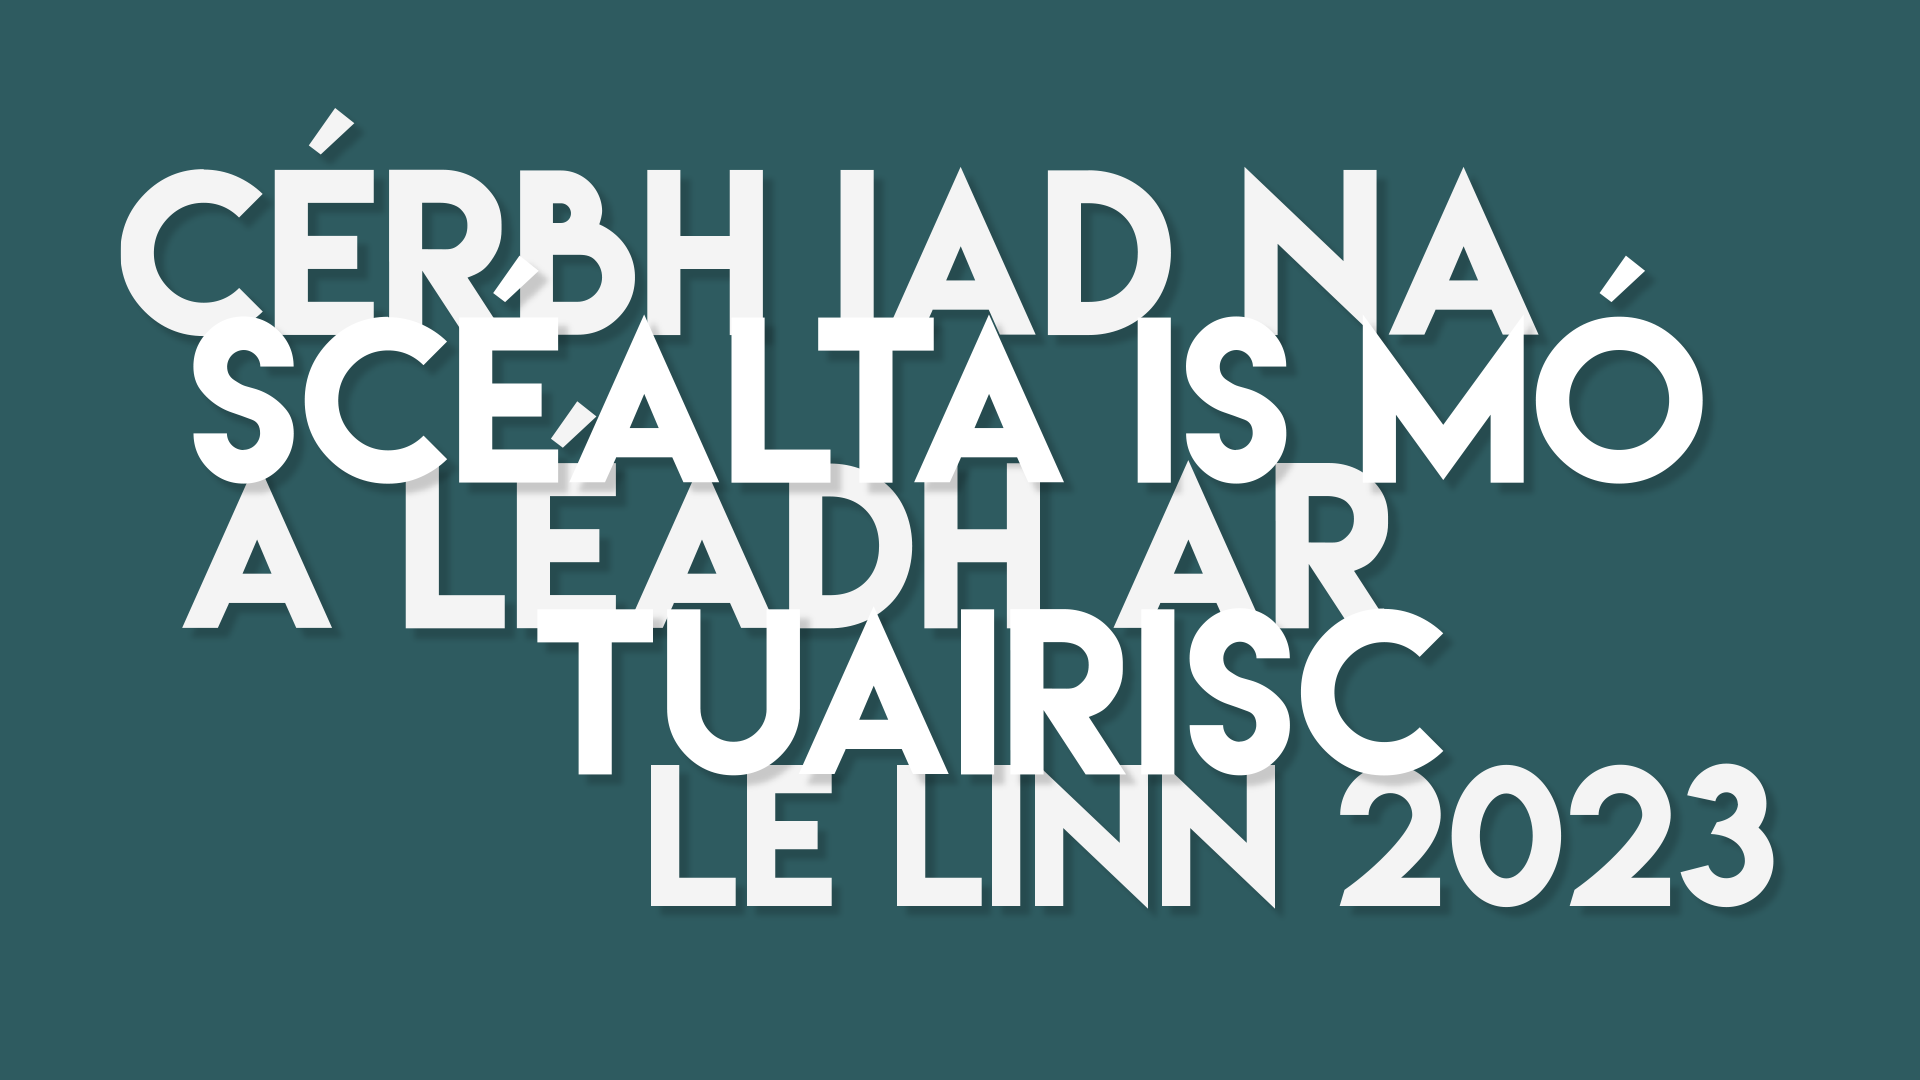 Cérbh iad na scéalta is mó ó shaol na Gaeilge agus na Gaeltachta a léadh ar Tuairisc le linn 2023? (20 go dtí 11)